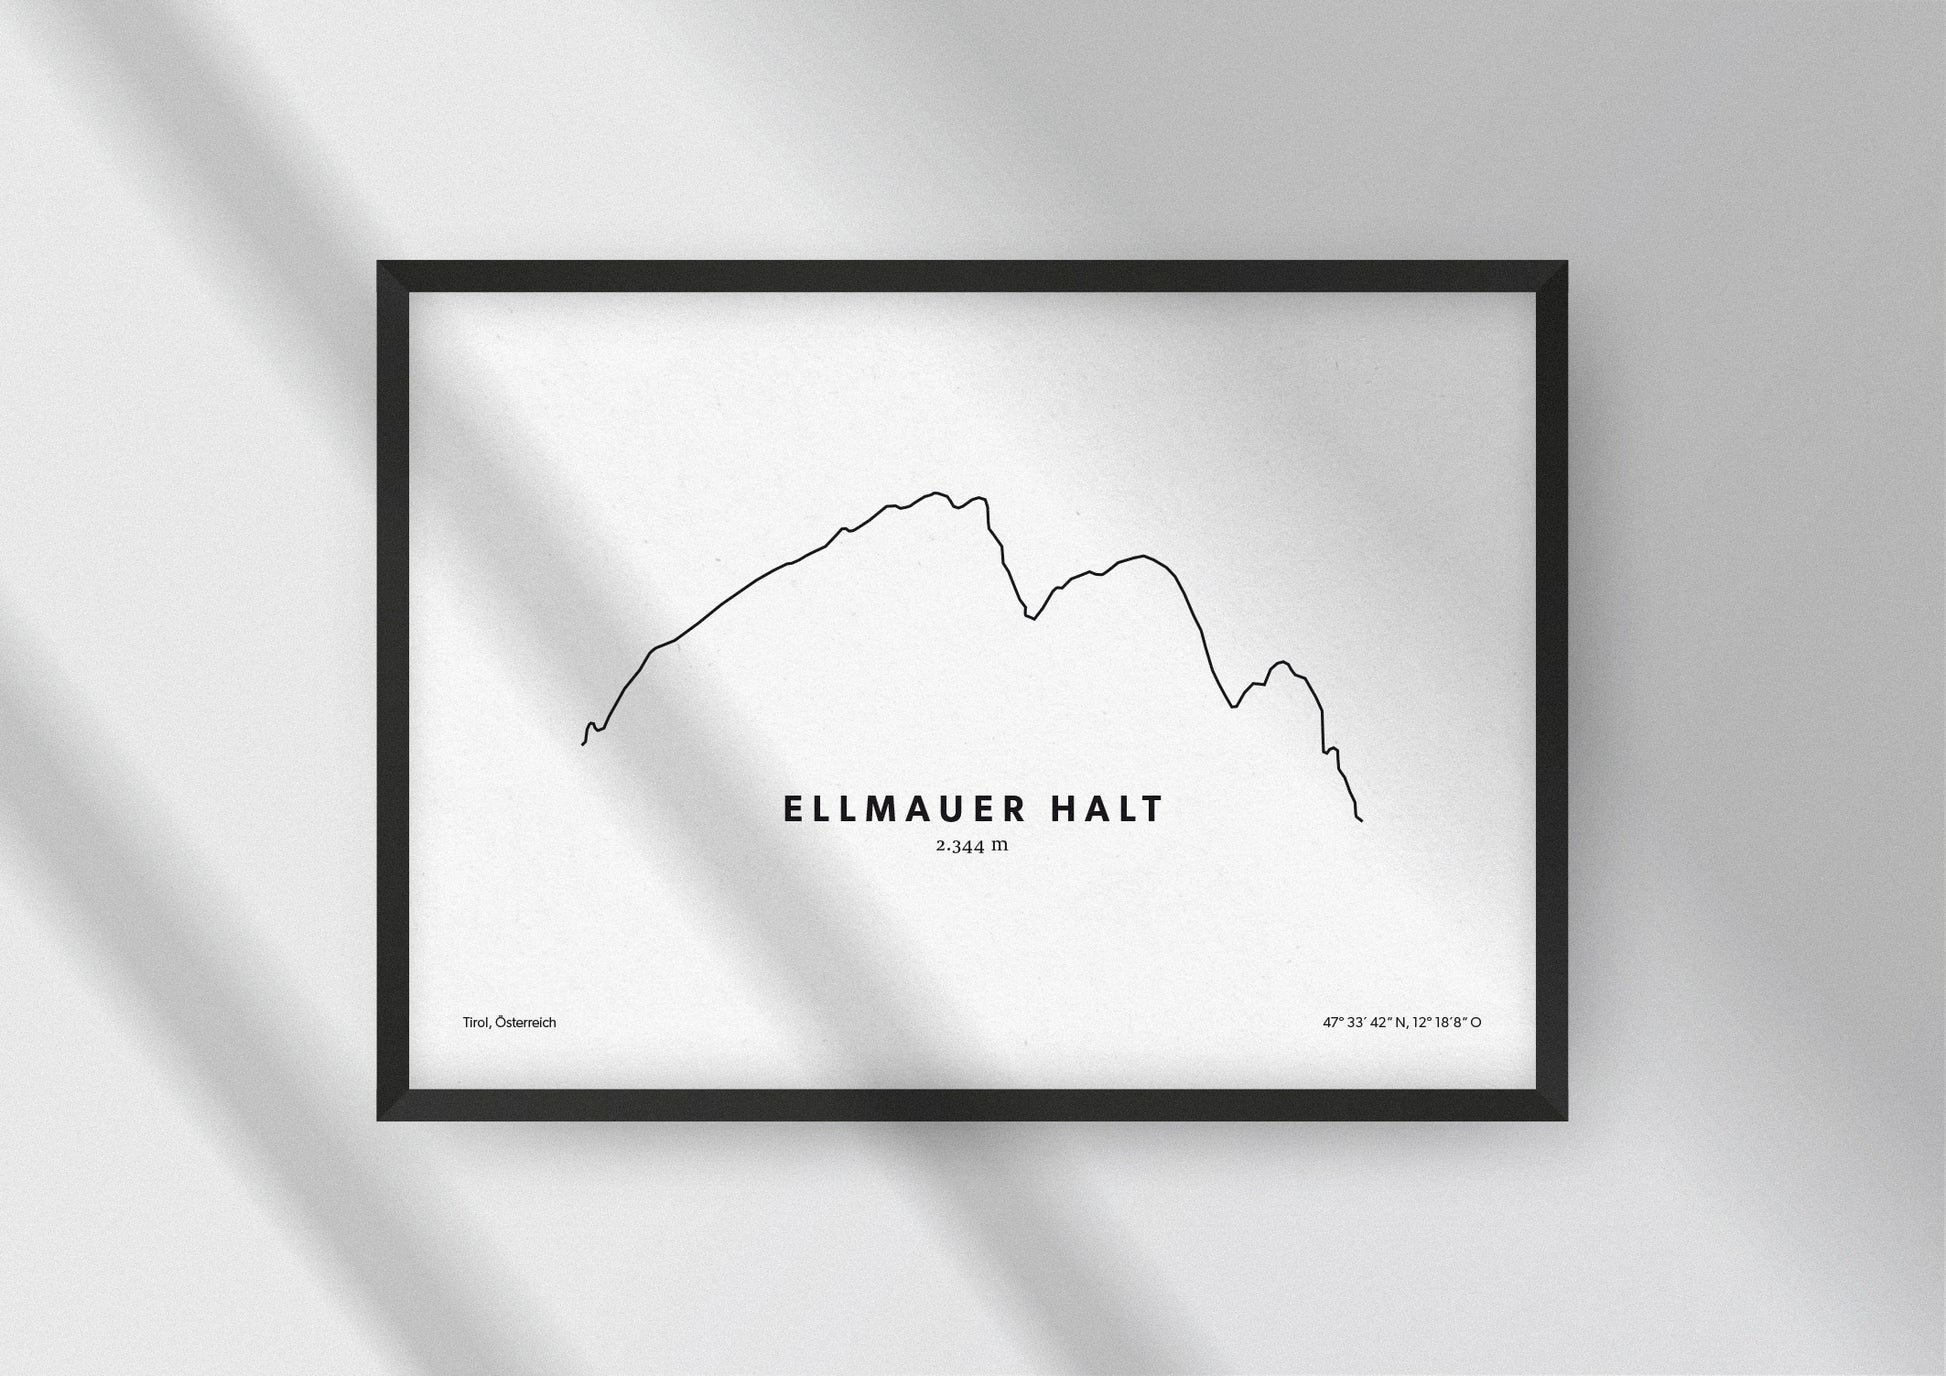 Minimalistische Illustration des Ellmauer Halt in Tirol, als stilvoller Einrichtungsgegenstand für Zuhause.